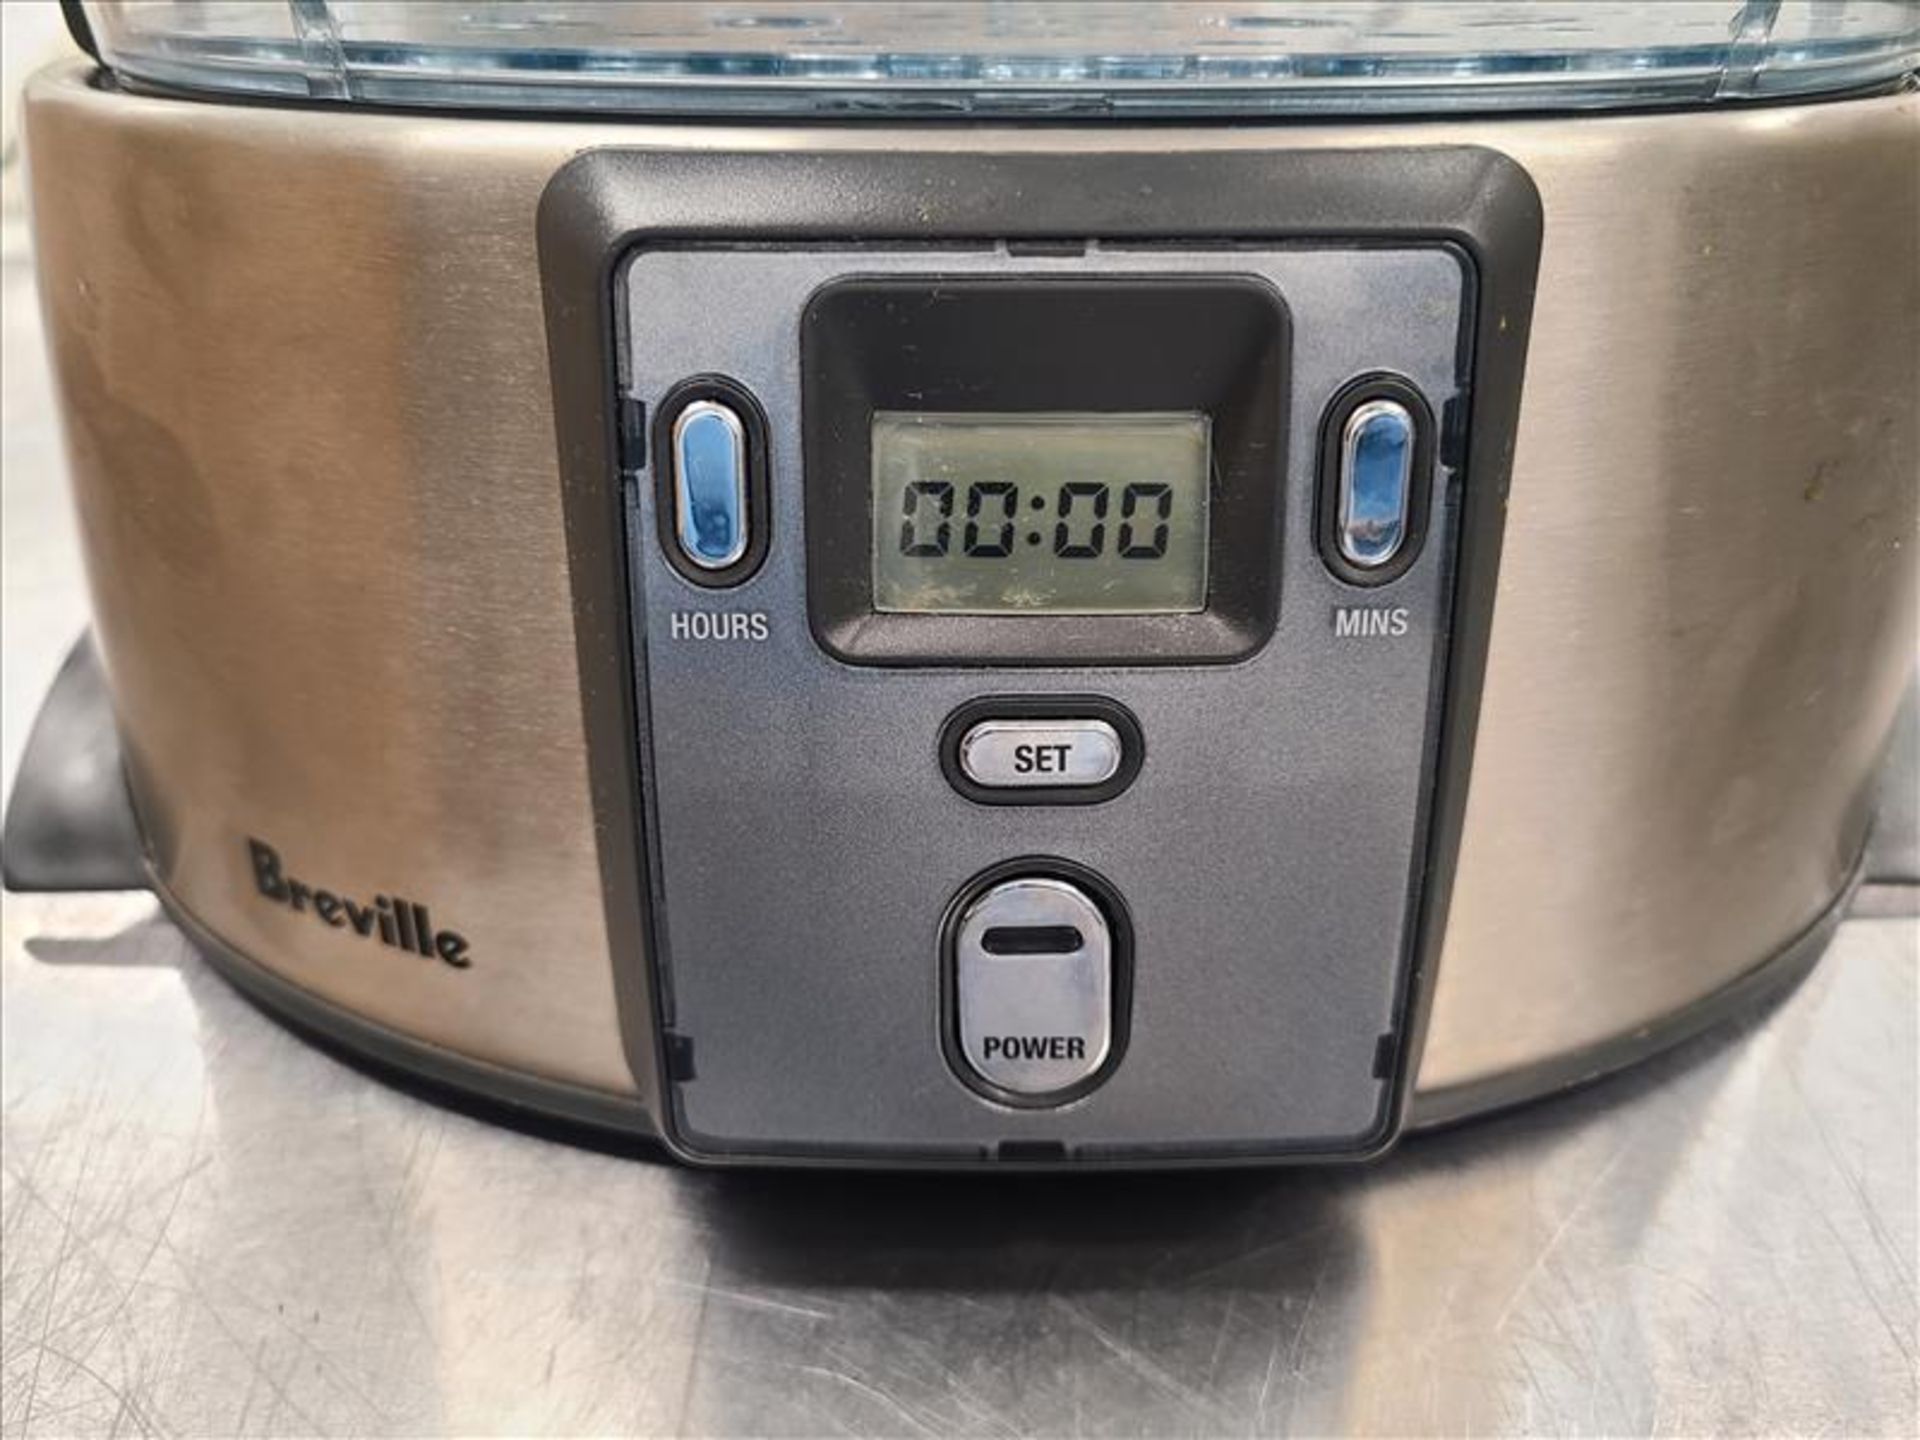 Breville Digital Food Steamer, mod. BFS600 [Loc.Test Kitchen] - Image 2 of 4